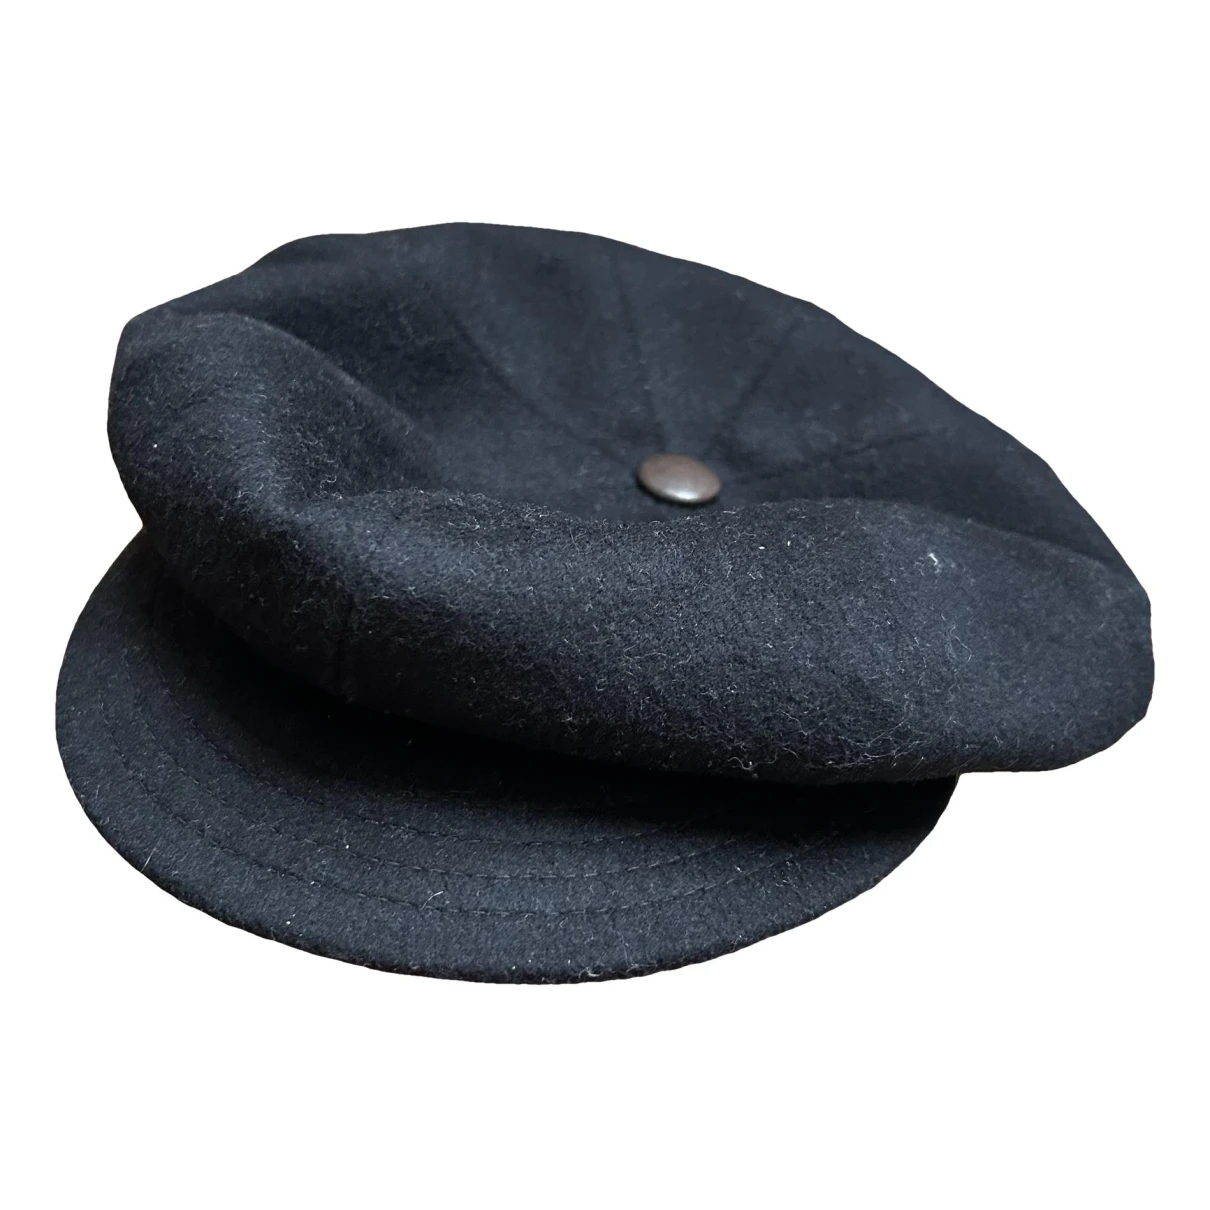 Pre-owned Borsalino Wool Cap In Black